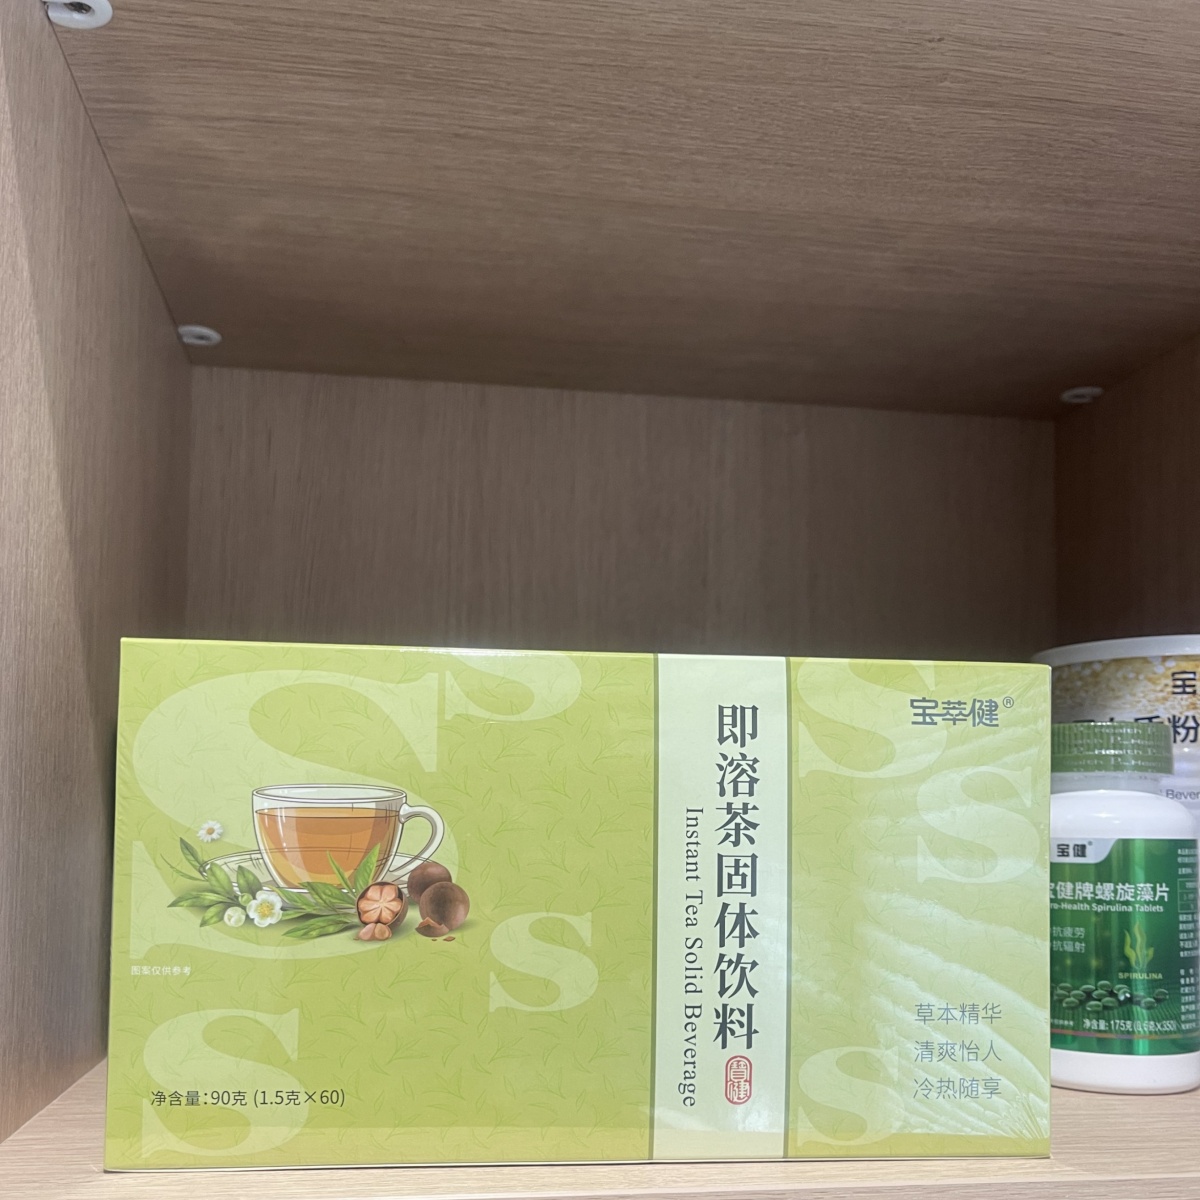 北京宝健宝萃健即溶茶固体饮料1.5克60袋S茶大S绿茶罗汉果杭菊粉